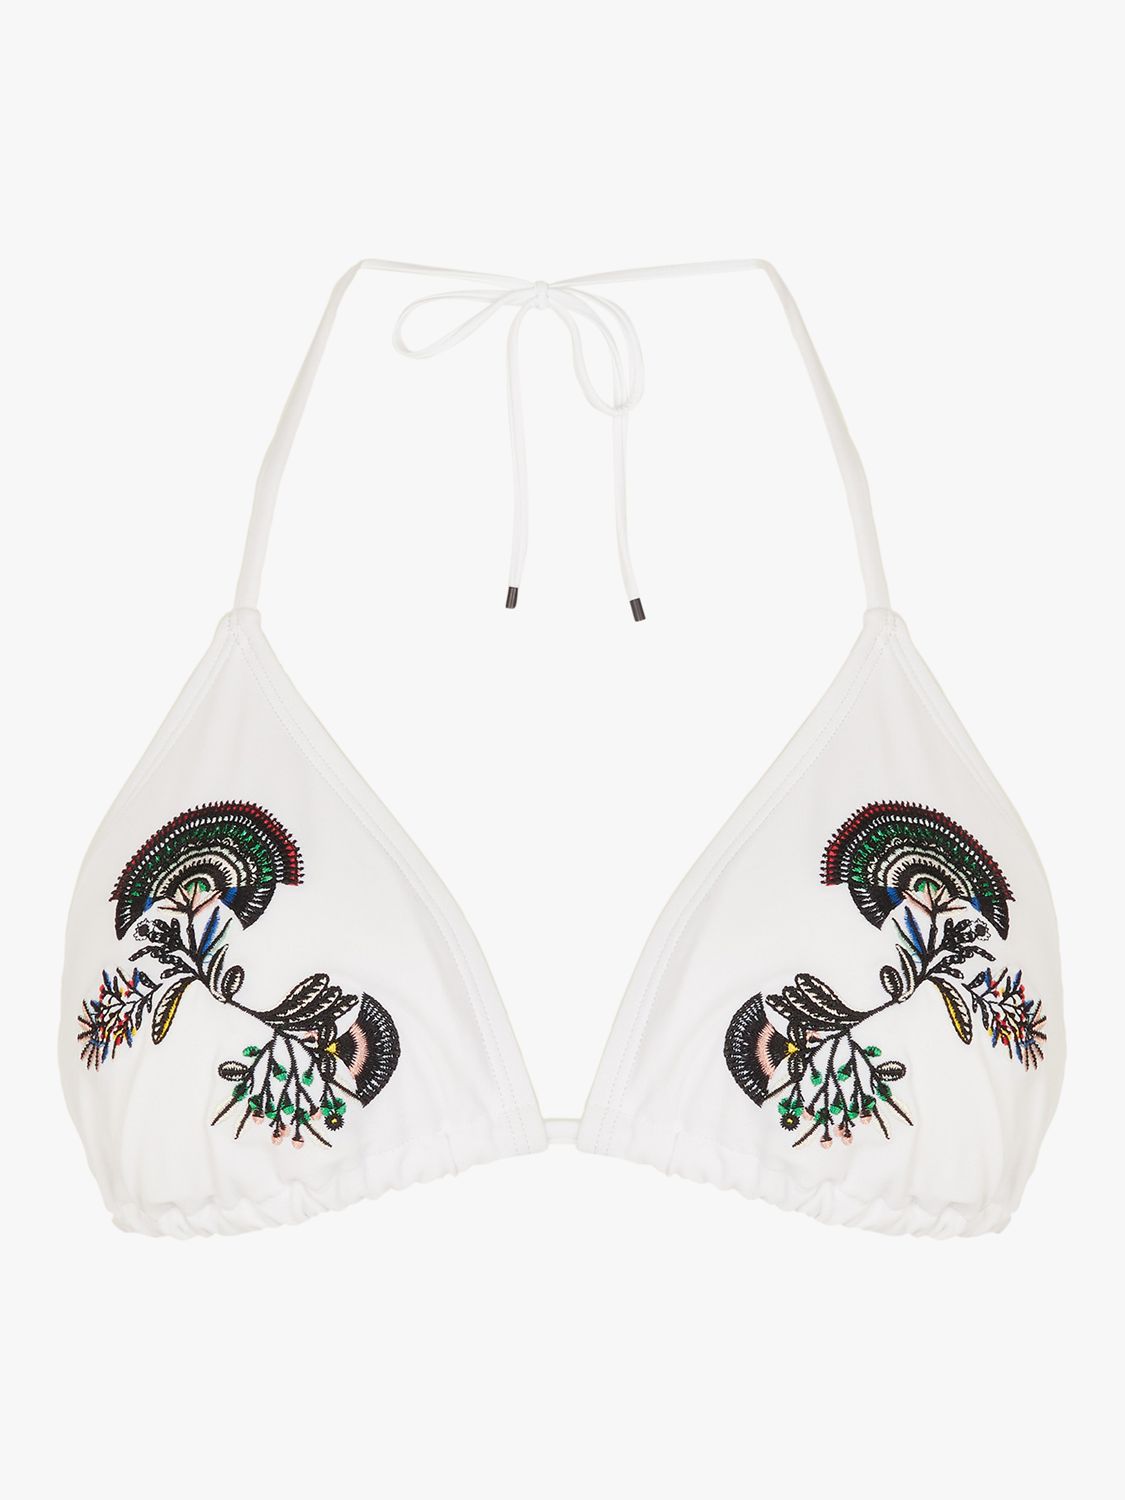 Accessorize Embroidered Fan Triangle Bikini Top, White, 12